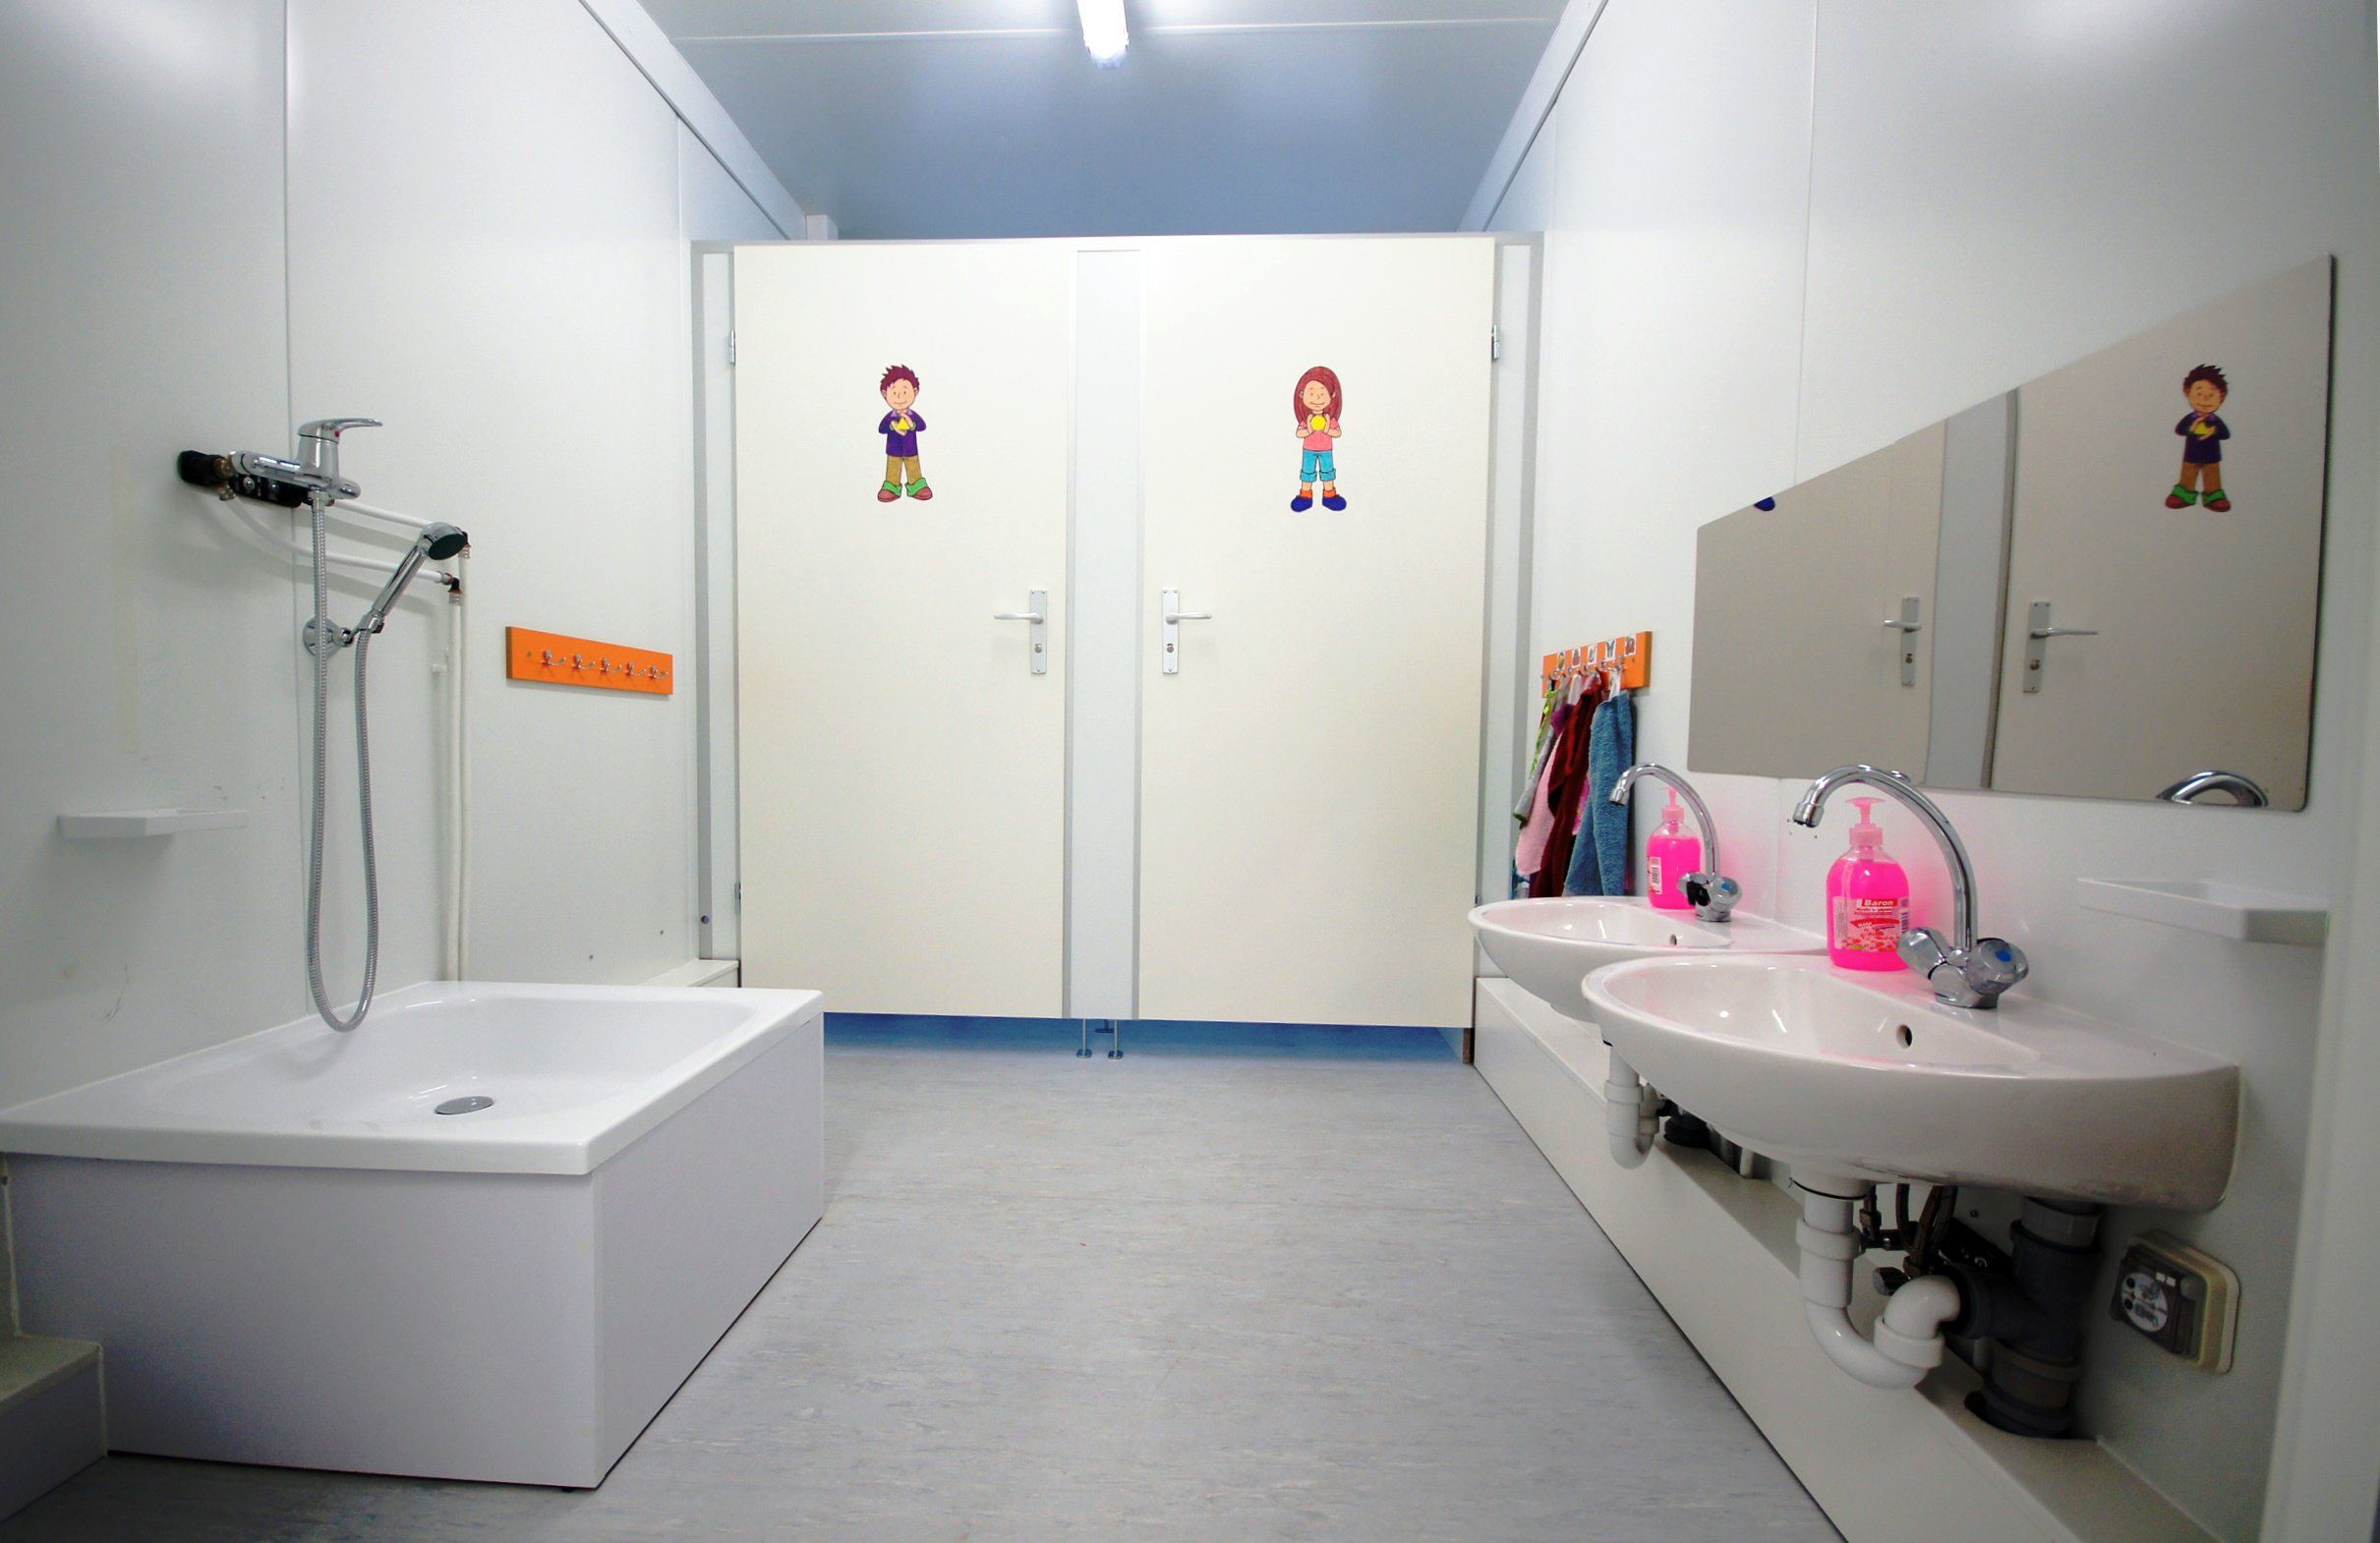 Sanitární prostory uzpůsobené dětem